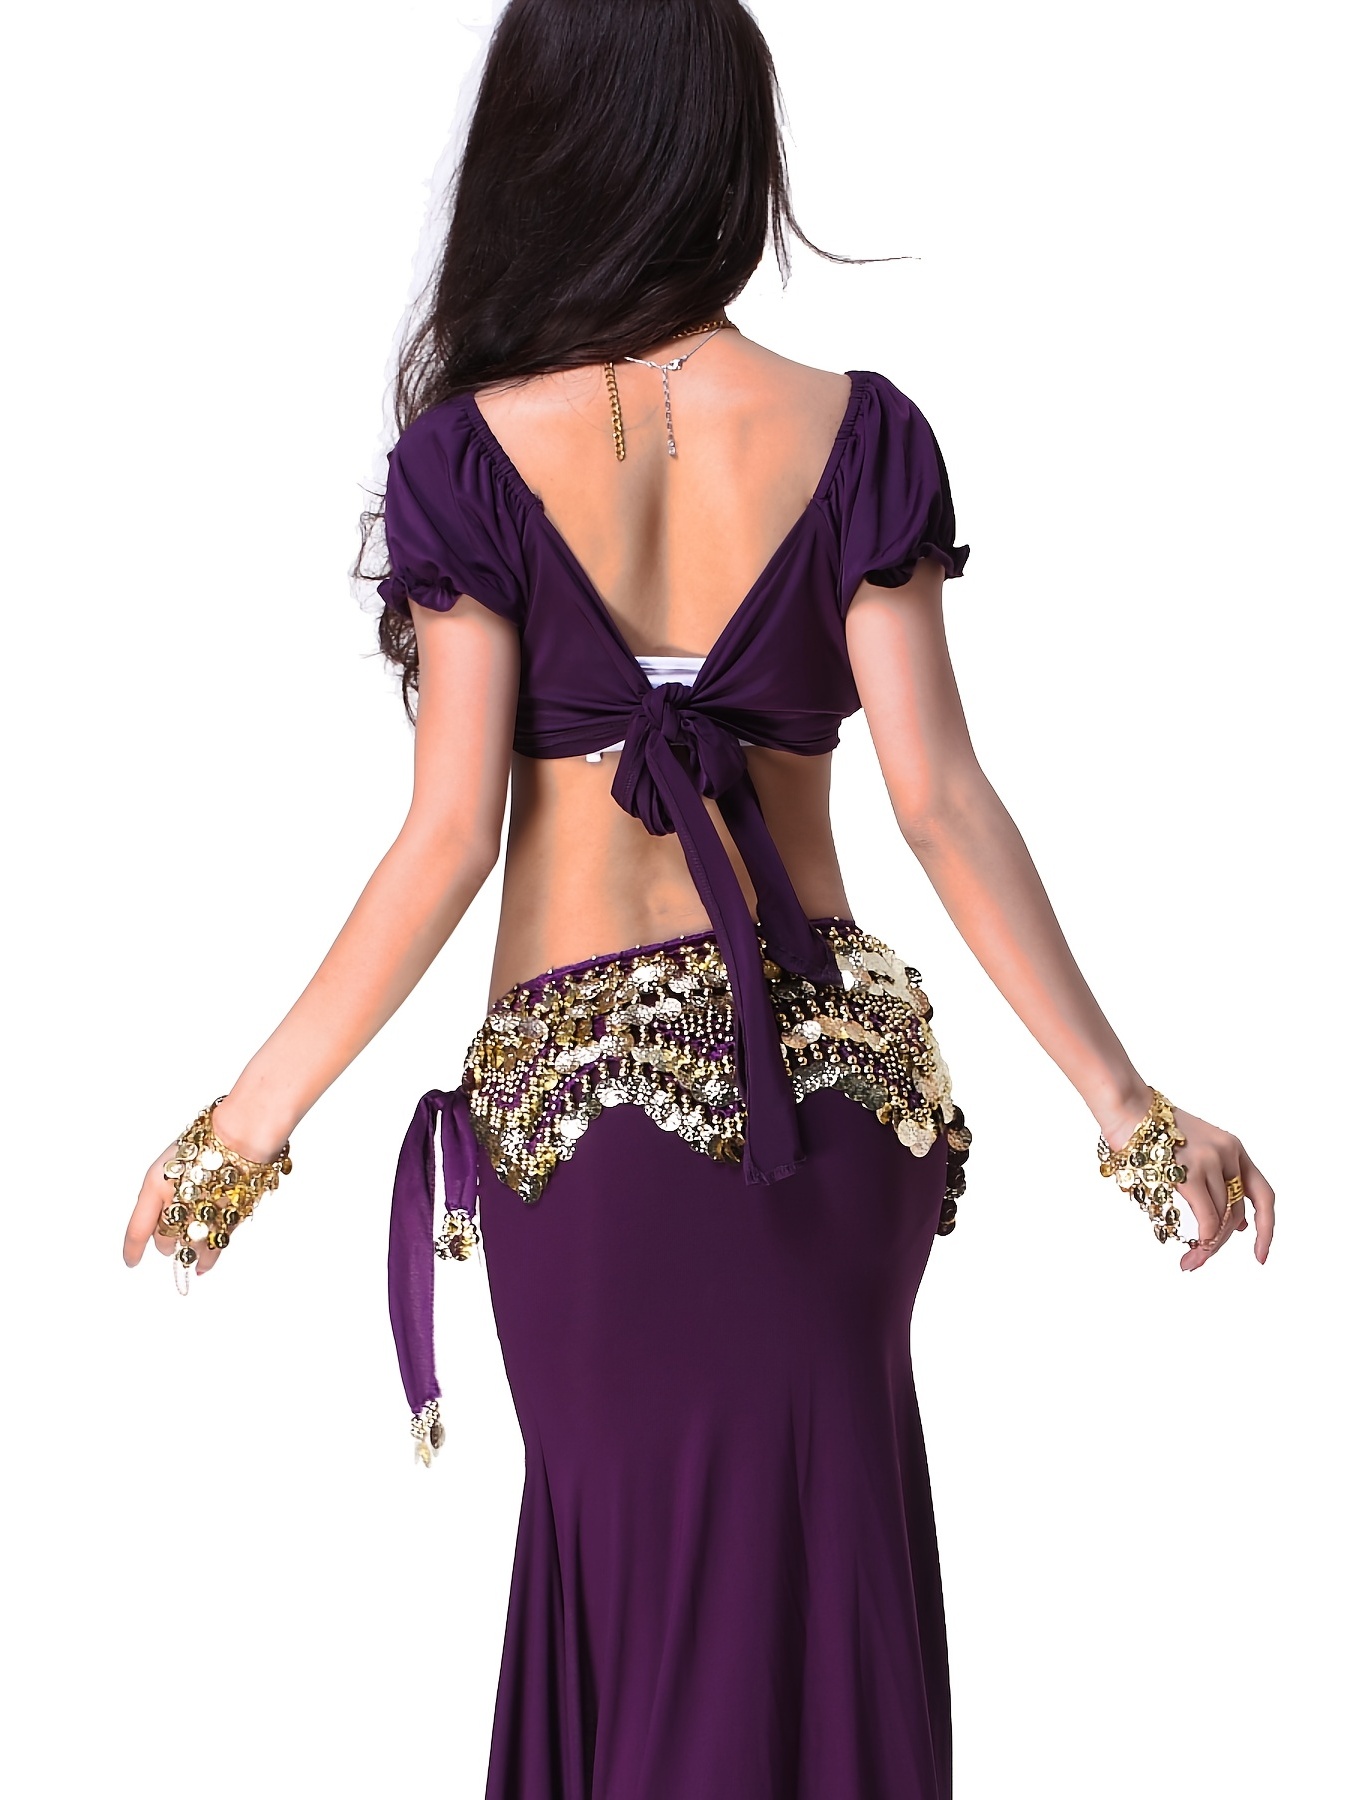 Wuchieal Cinturón de danza del vientre para mujer, cadena de cintura  colorida para danza del vientre, cinturón de bufanda de cadera